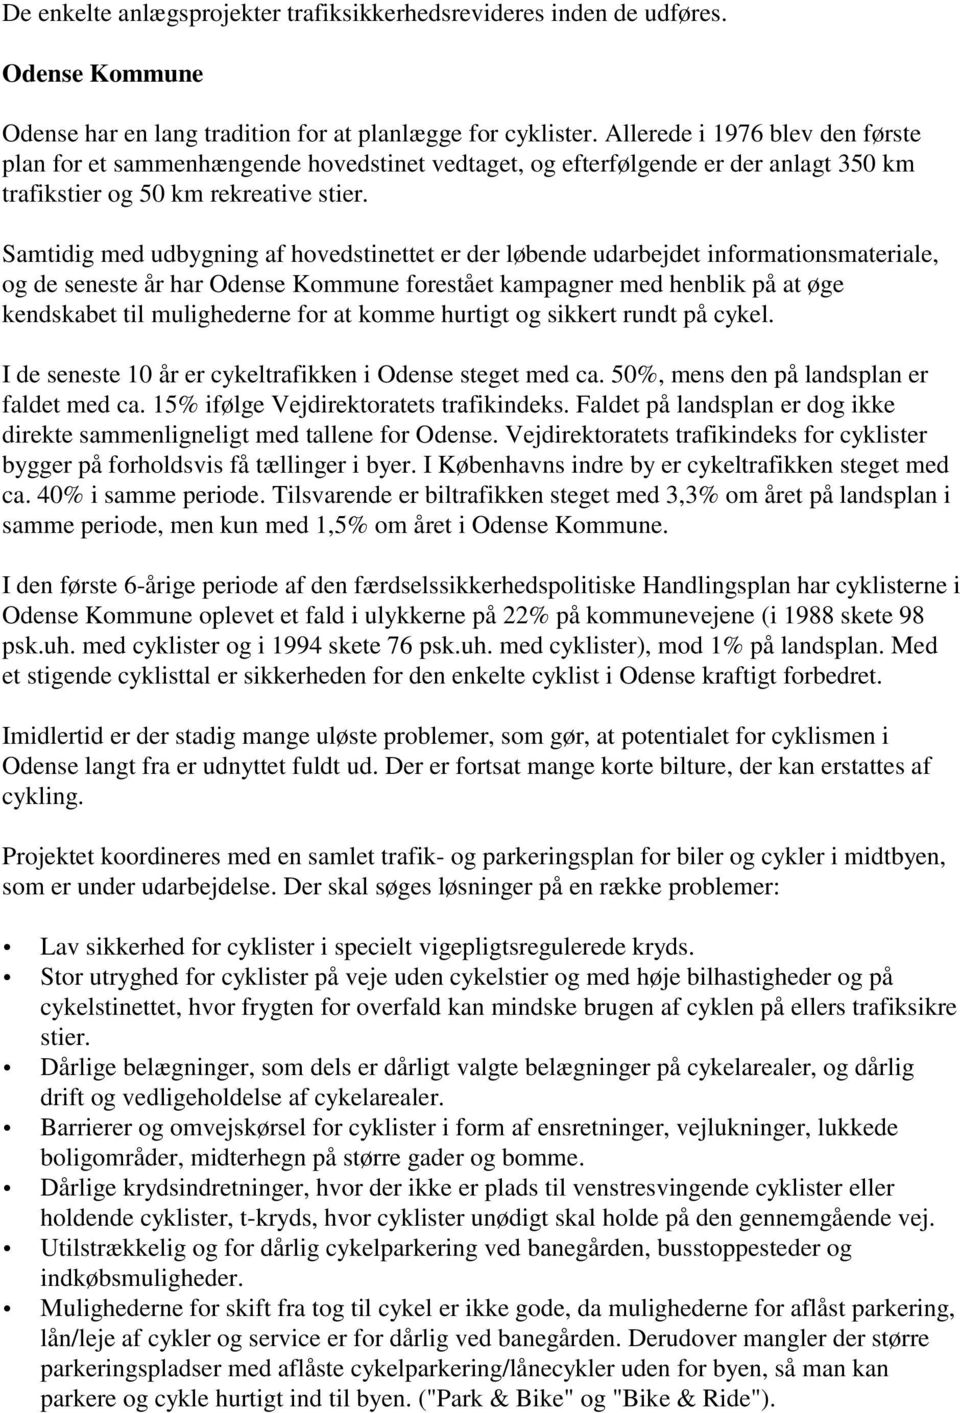 Samtidig med udbygning af hovedstinettet er der løbende udarbejdet informationsmateriale, og de seneste år har Odense Kommune forestået kampagner med henblik på at øge kendskabet til mulighederne for